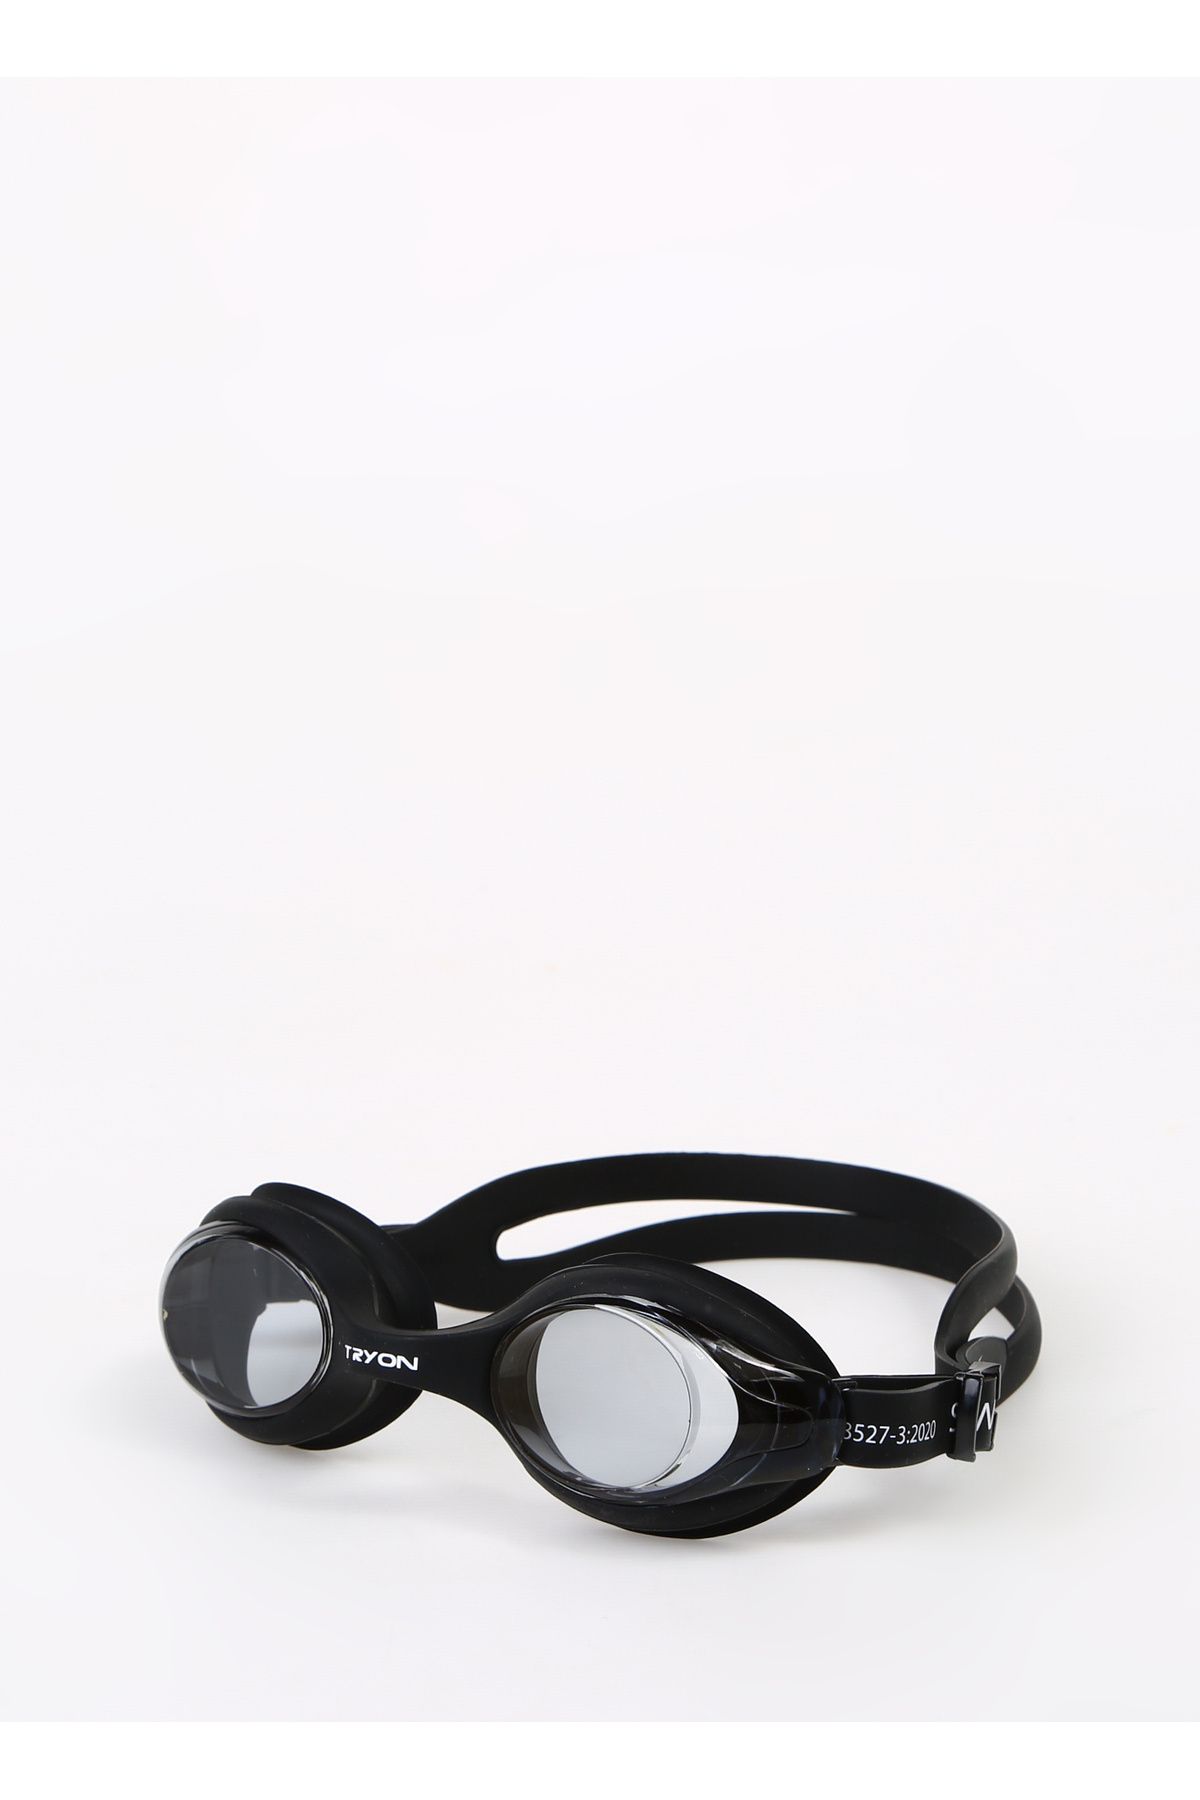 TRYON Siyah Unisex Yüzücü Gözlüğü YG-400-1